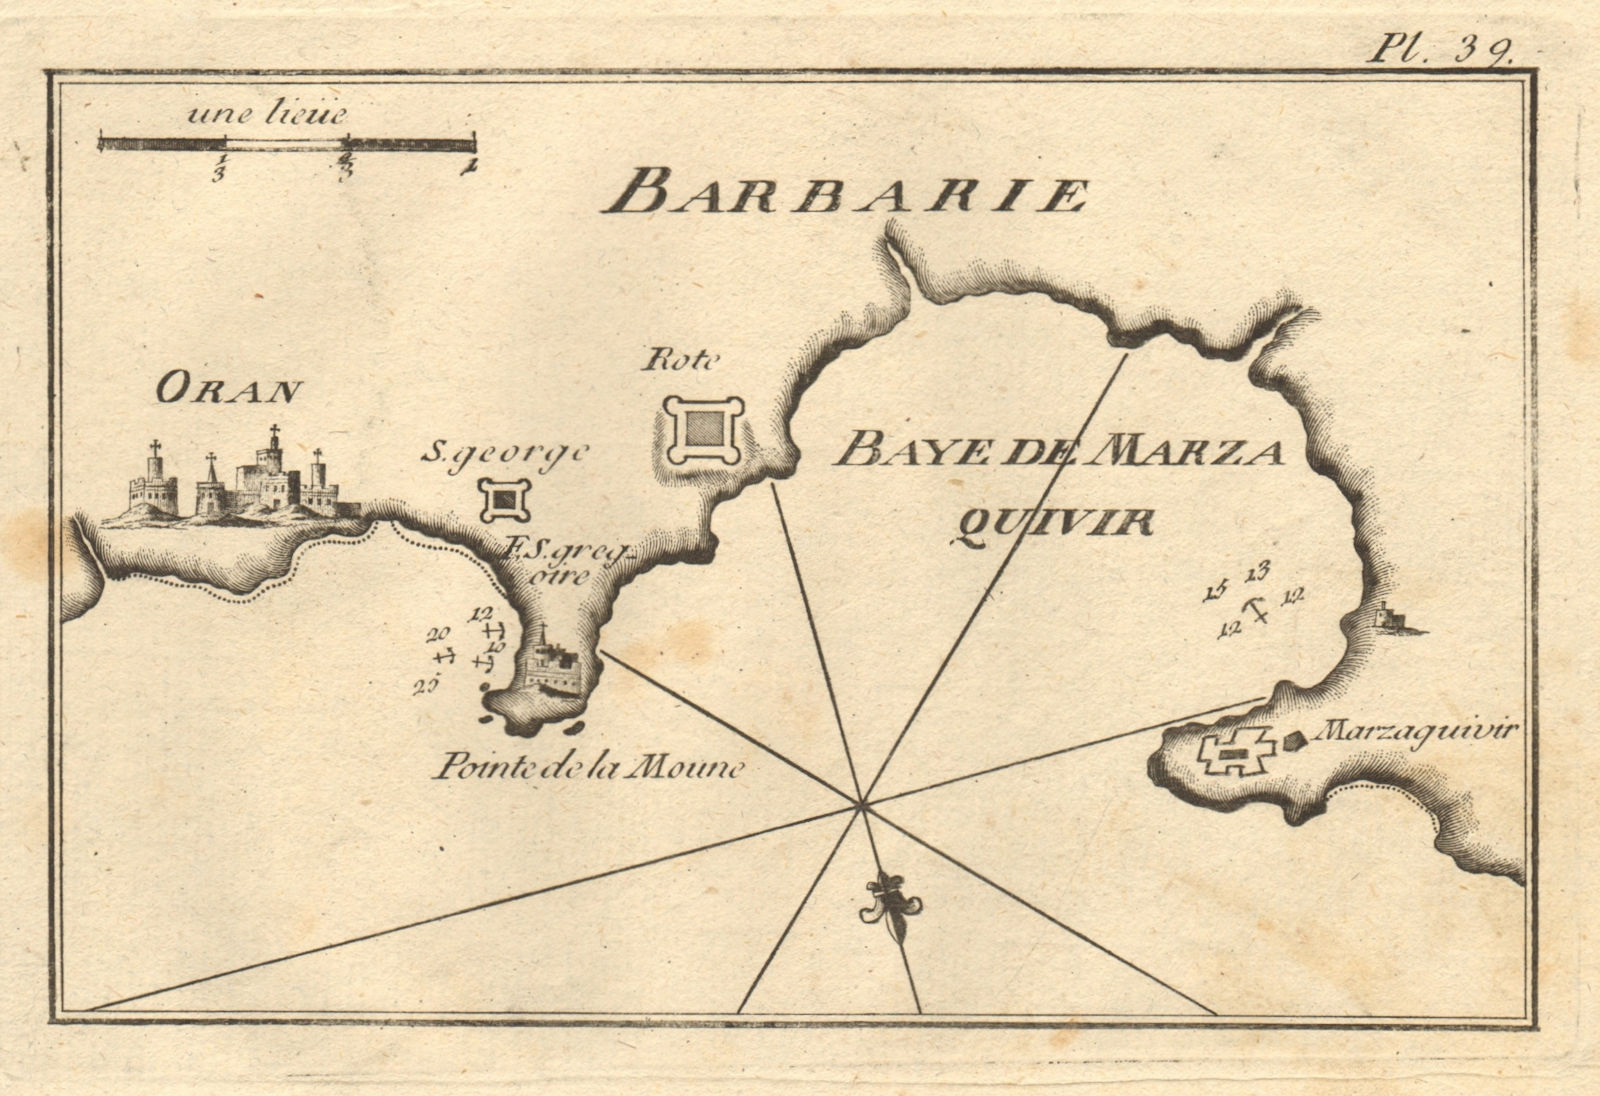 Oran & Baye de Marza Quivir, Barbarie. Mers El Kebir. Algeria. ROUX 1804 map